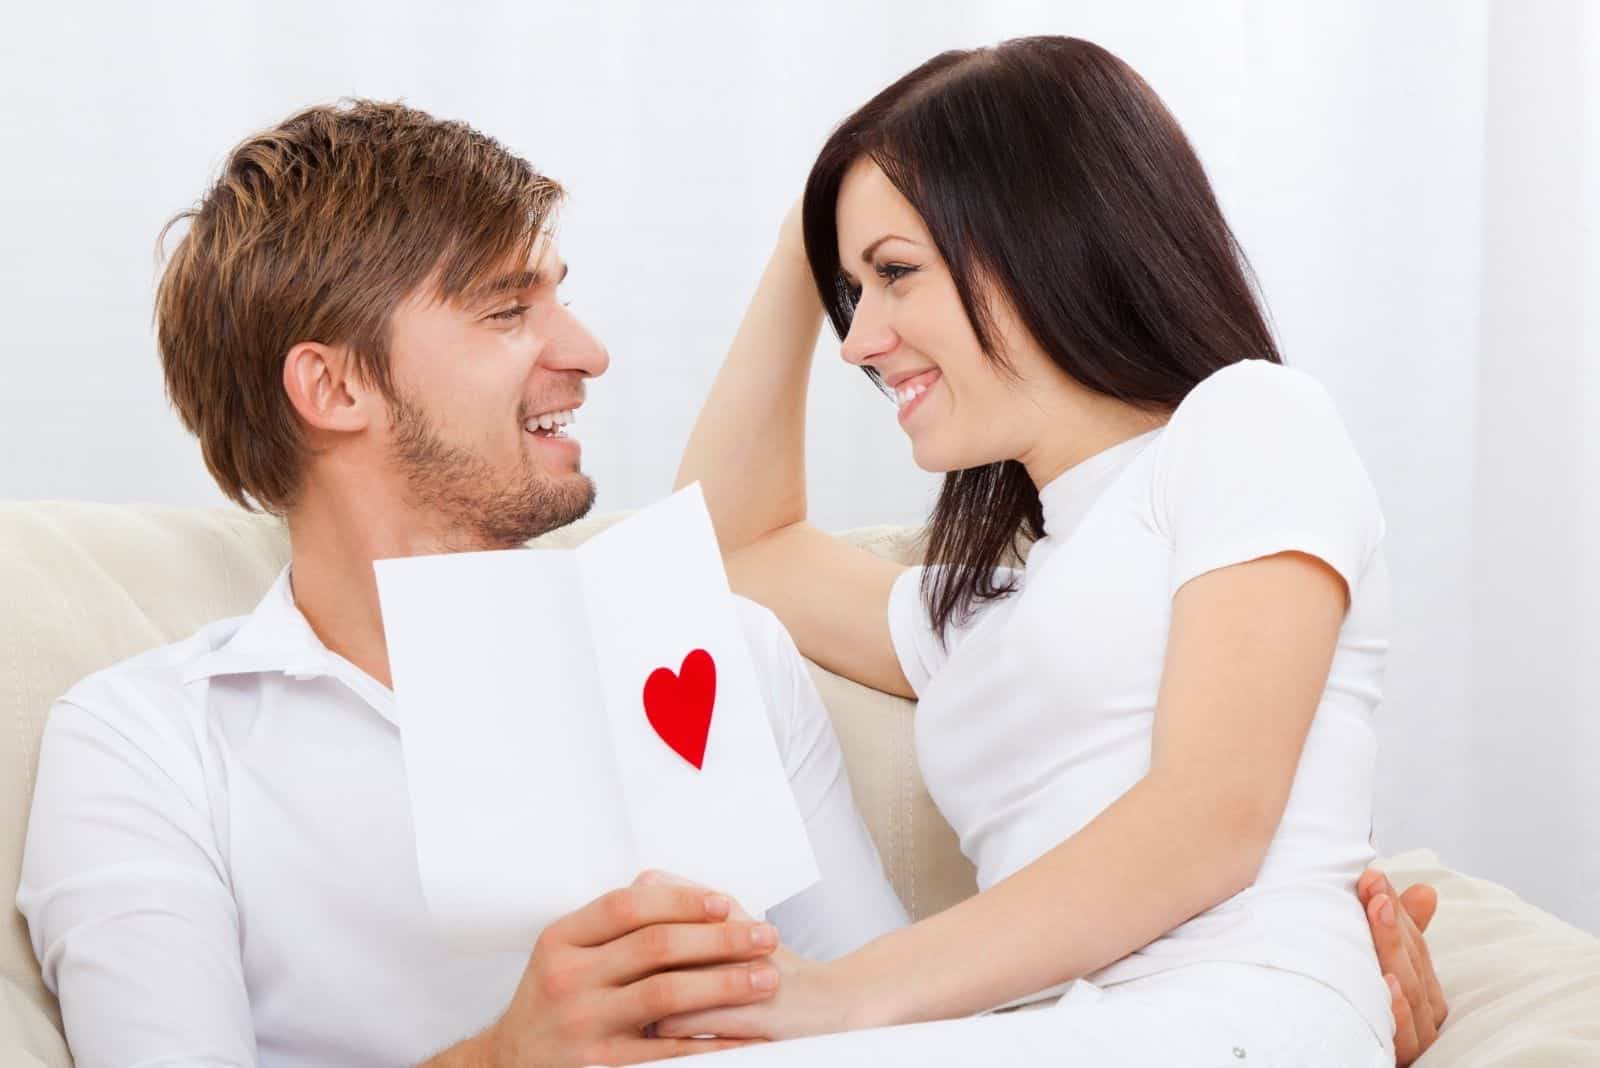 jeune couple d'amoureux tenant une carte de vœux de la Saint-Valentin avec un cœur rouge